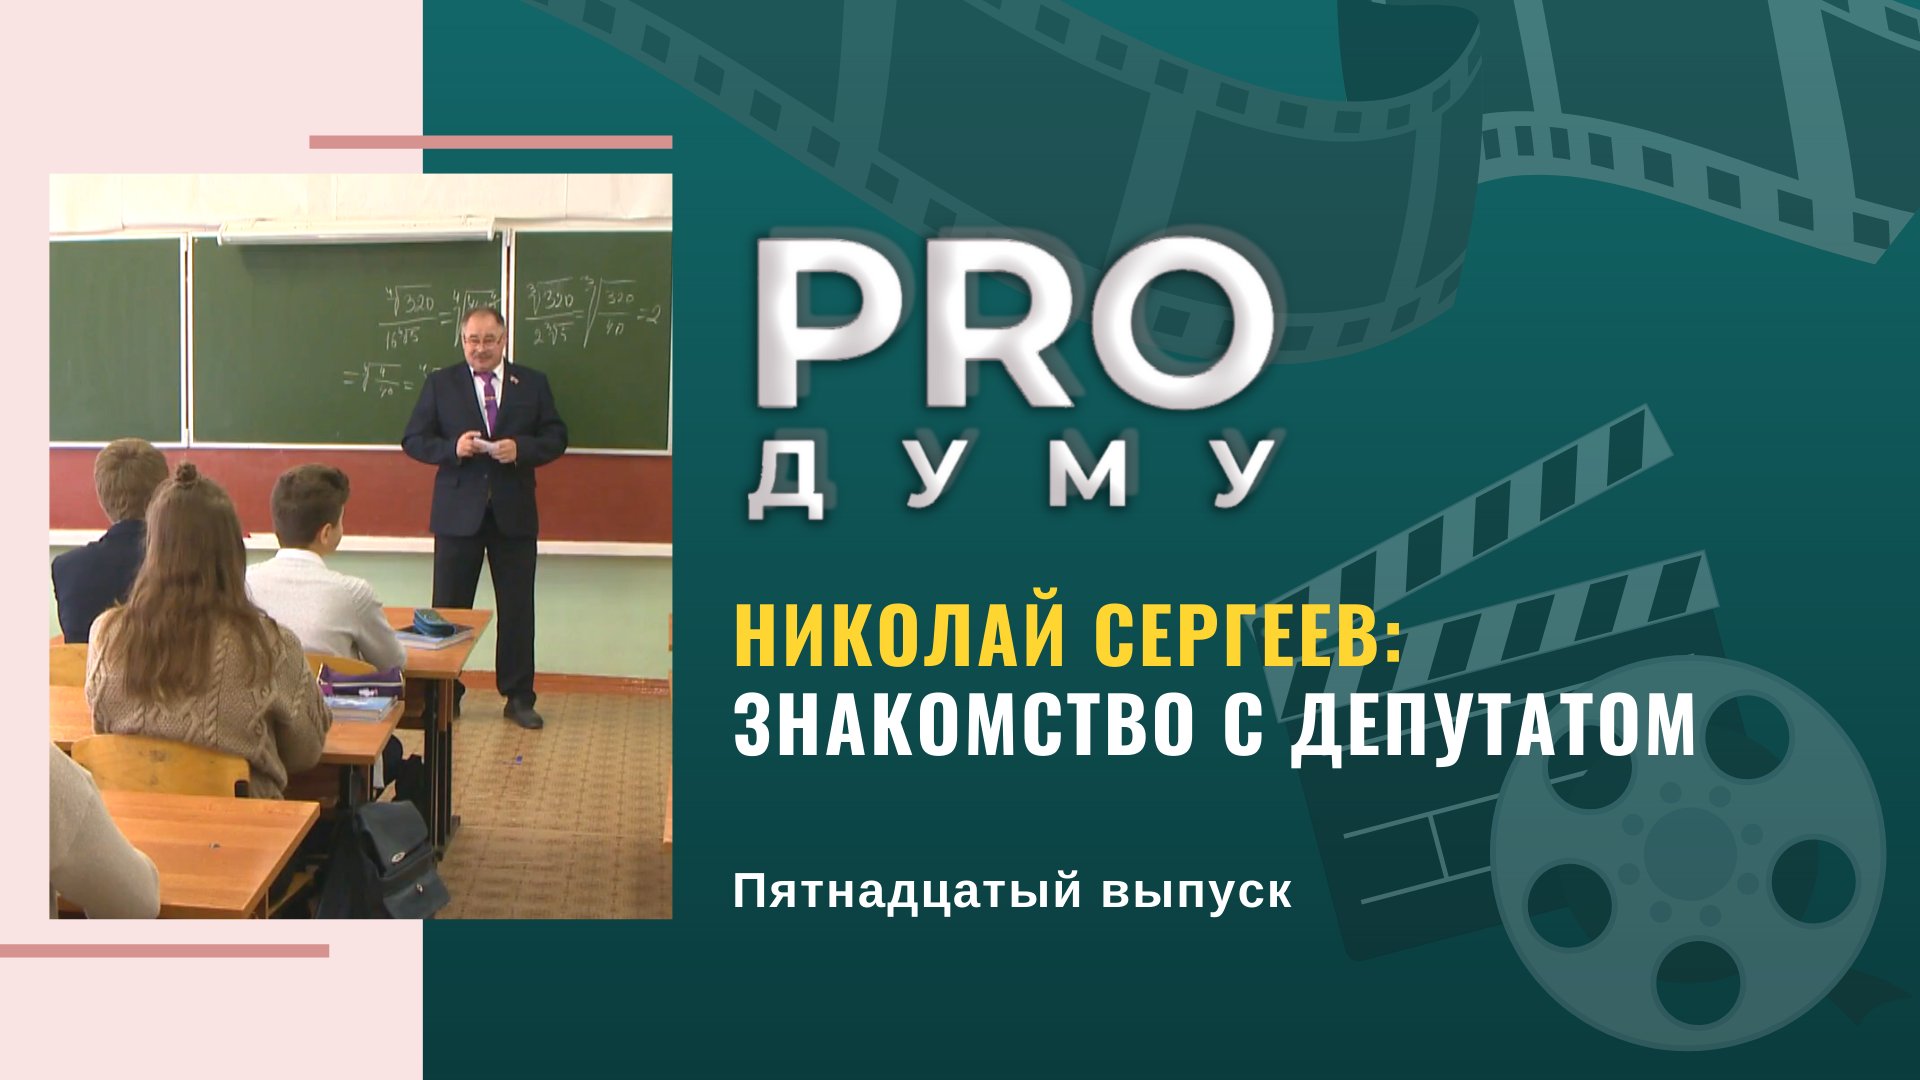 «PRO Думу»: знакомство с депутатом Николаем Сергеевым, «нулевые чтения» и вычет за спорт